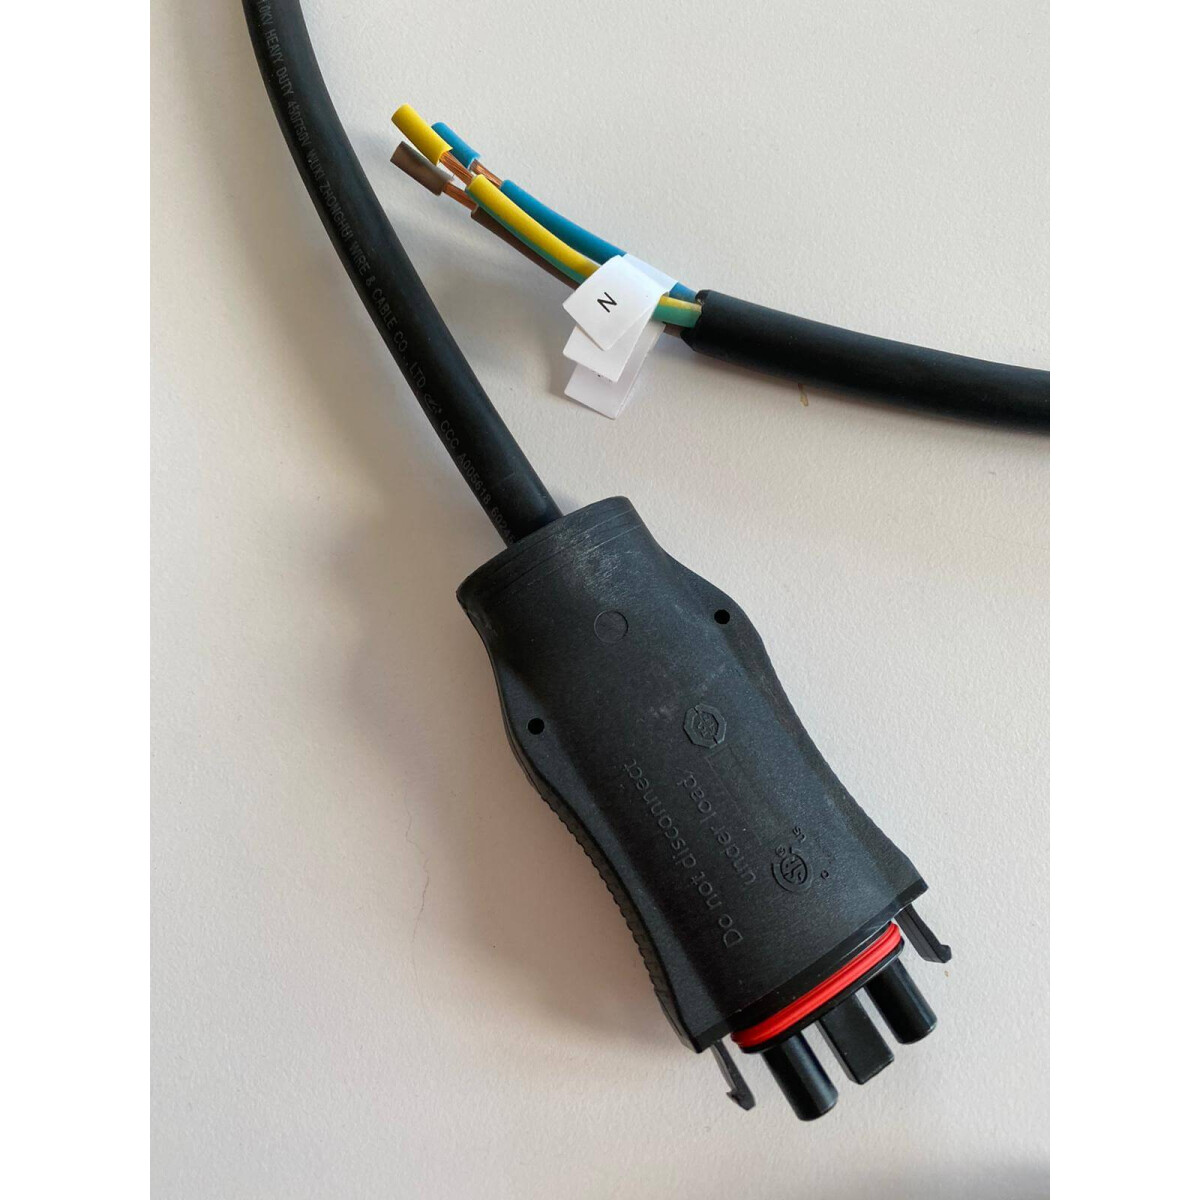 Envertech Microwechselrichter EVT300S online kaufen bei PrimeSolar